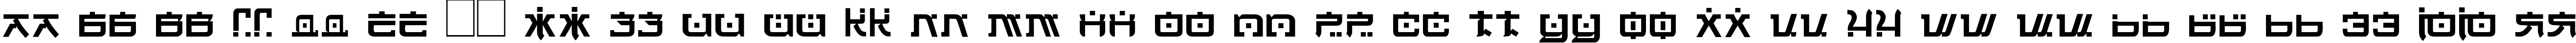 Пример написания русского алфавита шрифтом DSJapanCyr  Normal